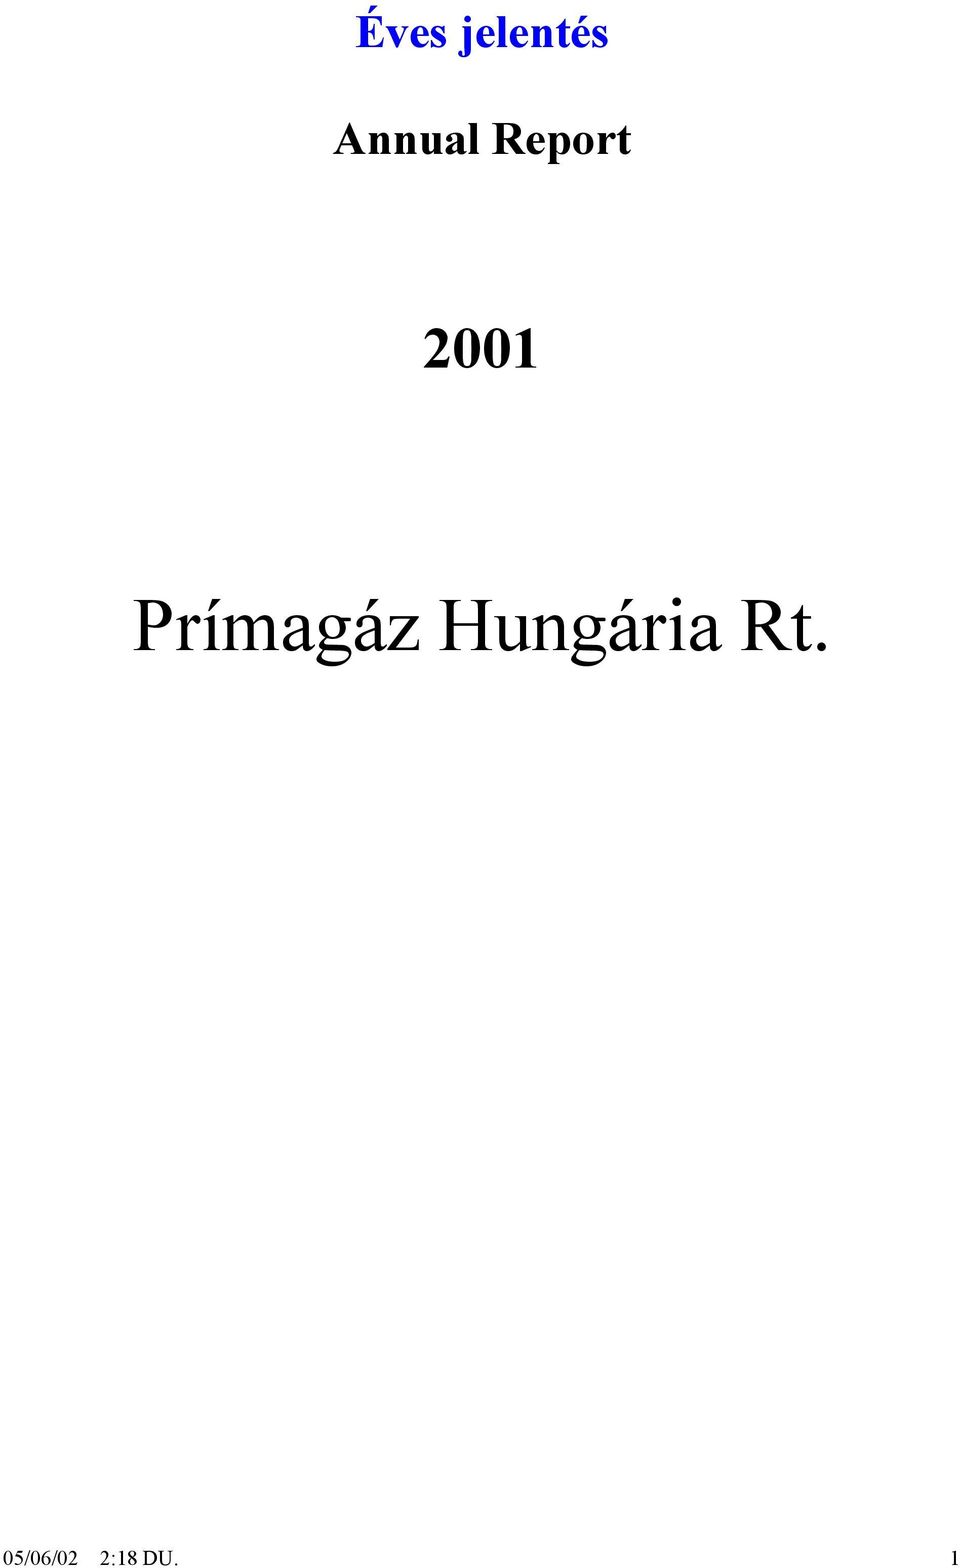 Prímagáz Hungária